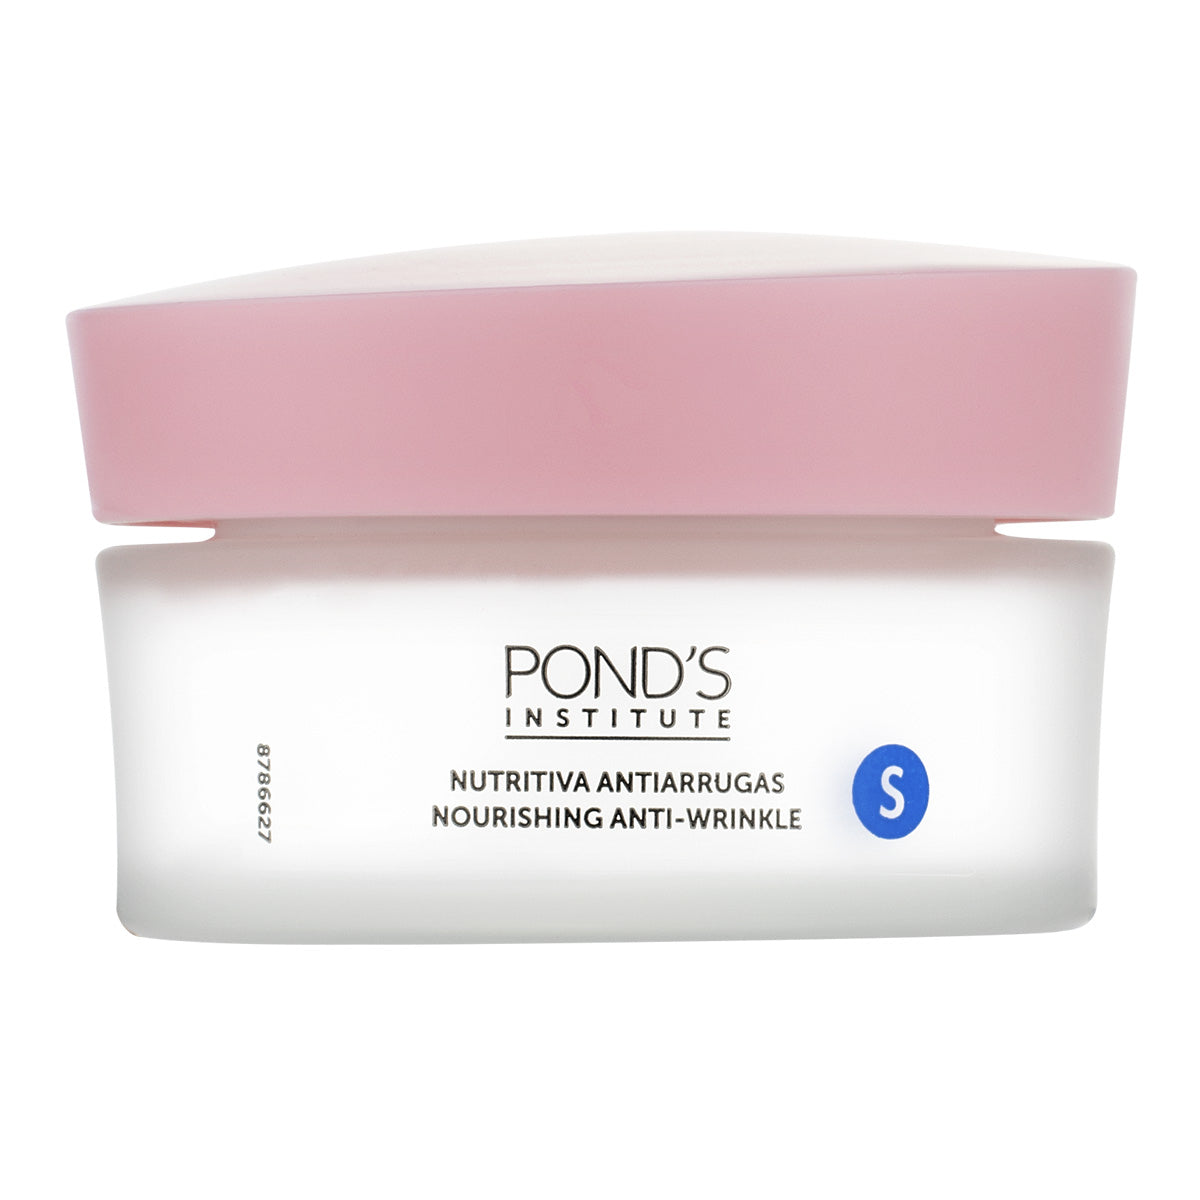 Pond's Institute Essential Care Nourishing Anti-Wrinkle Cream